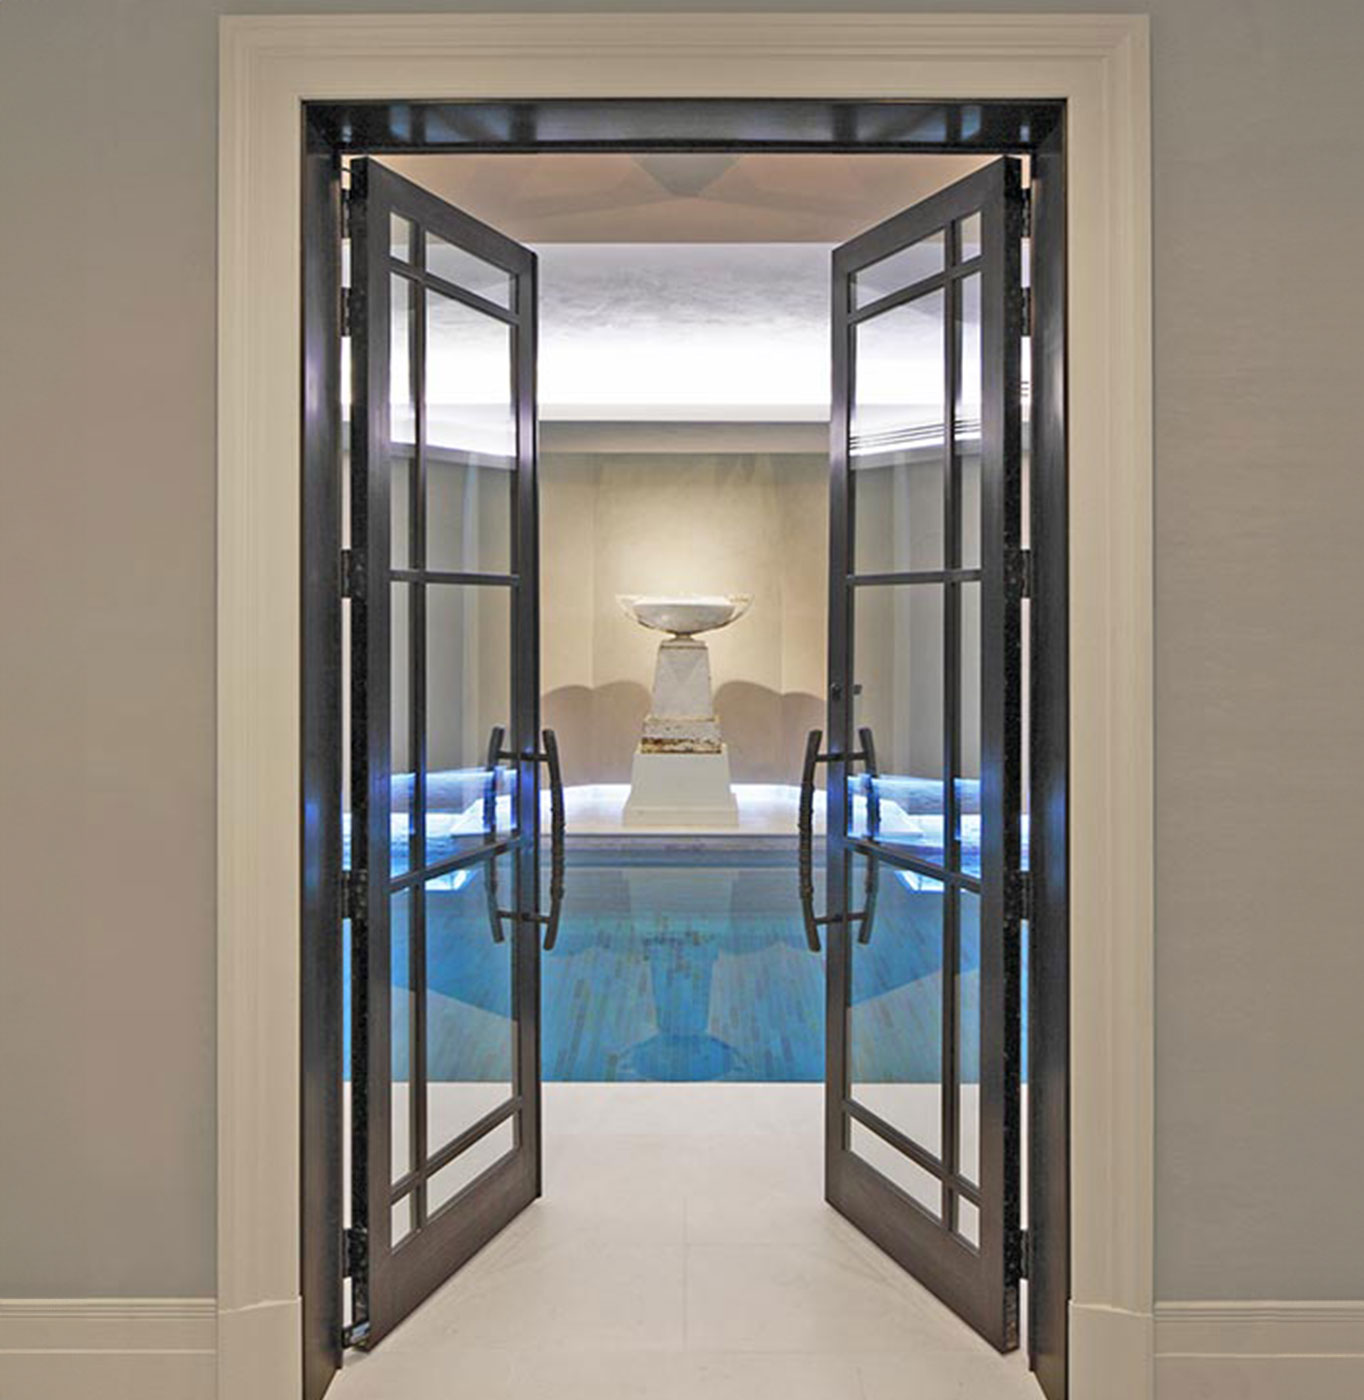 Bronze doors into a pool room